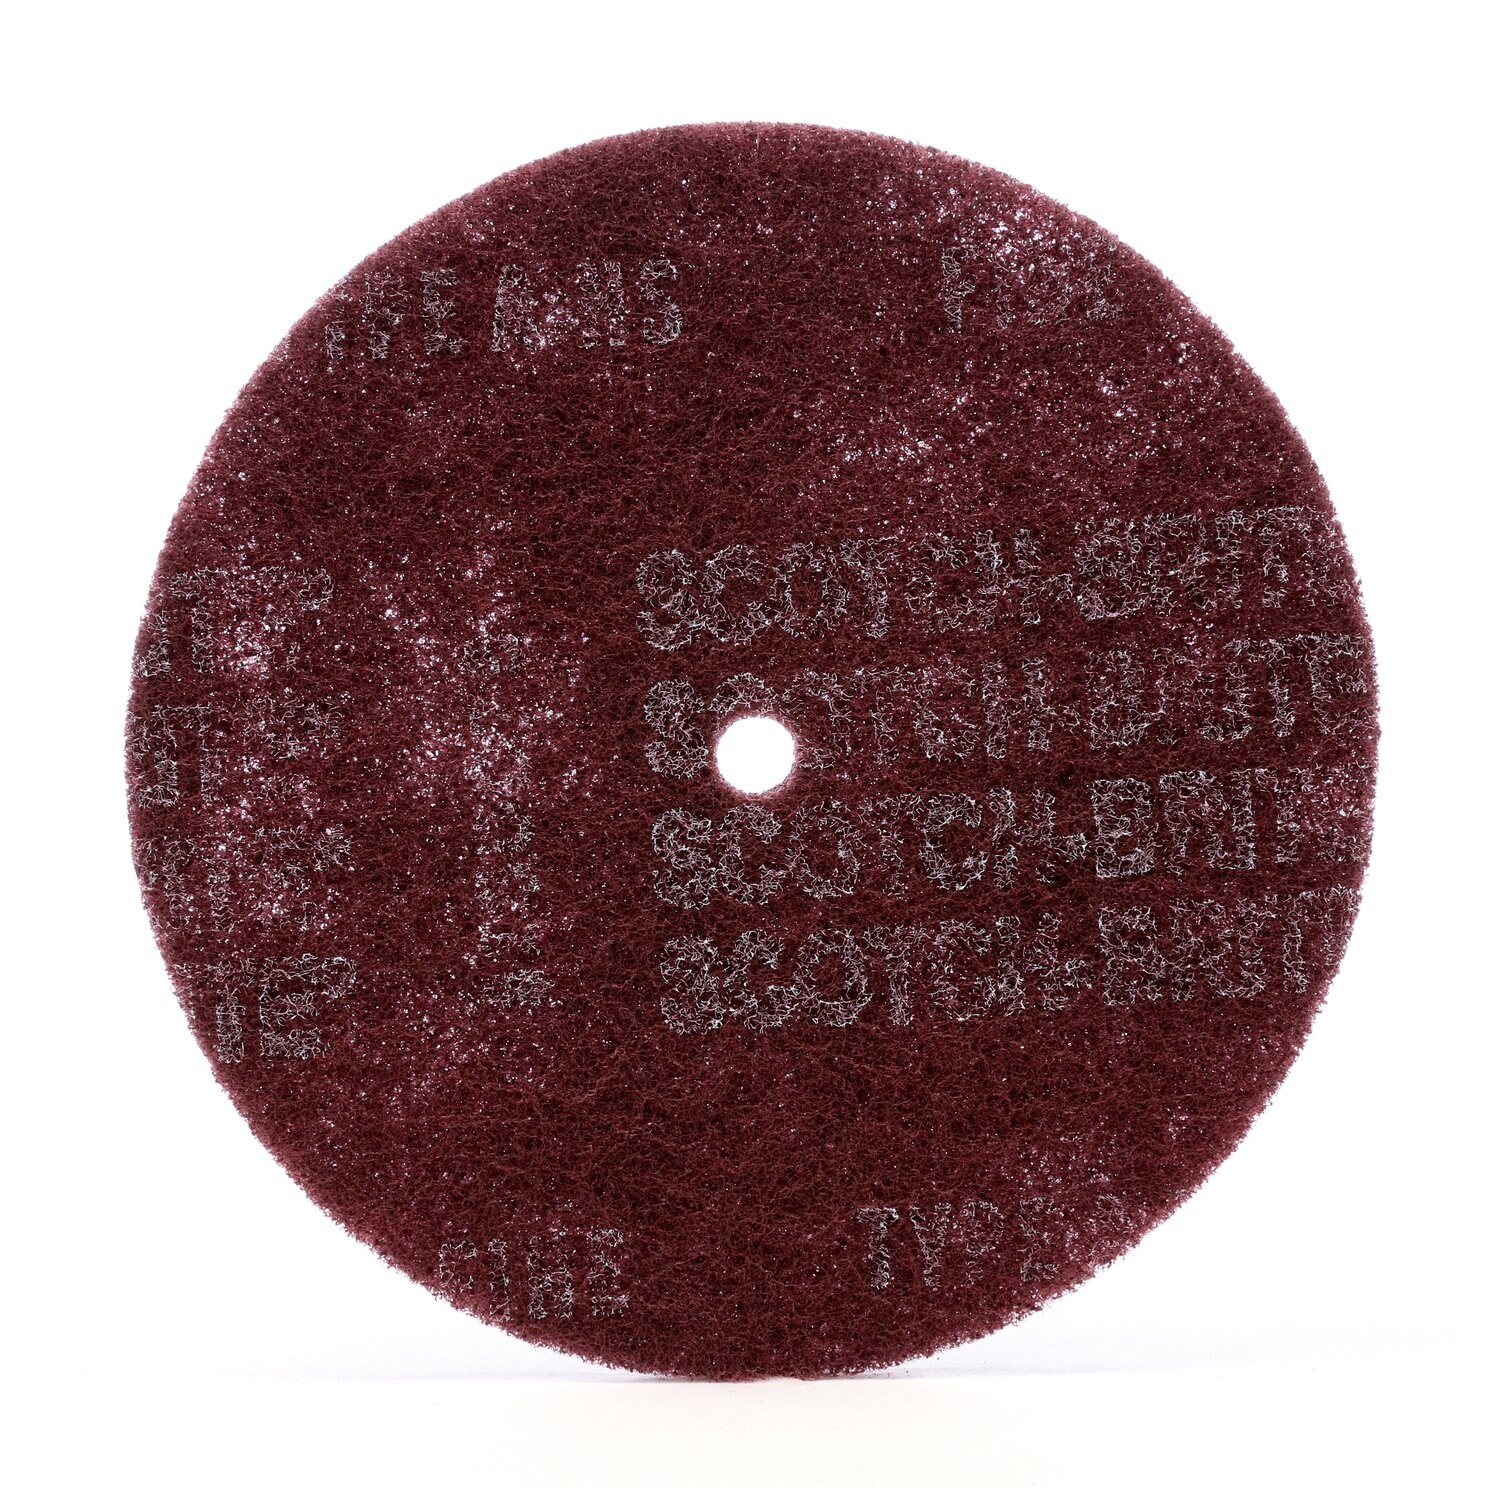 7000120987 - Scotch-Brite High Strength Disc, 6 in x 1/2 in, A VFN, 10/Pac, 40
ea/Case